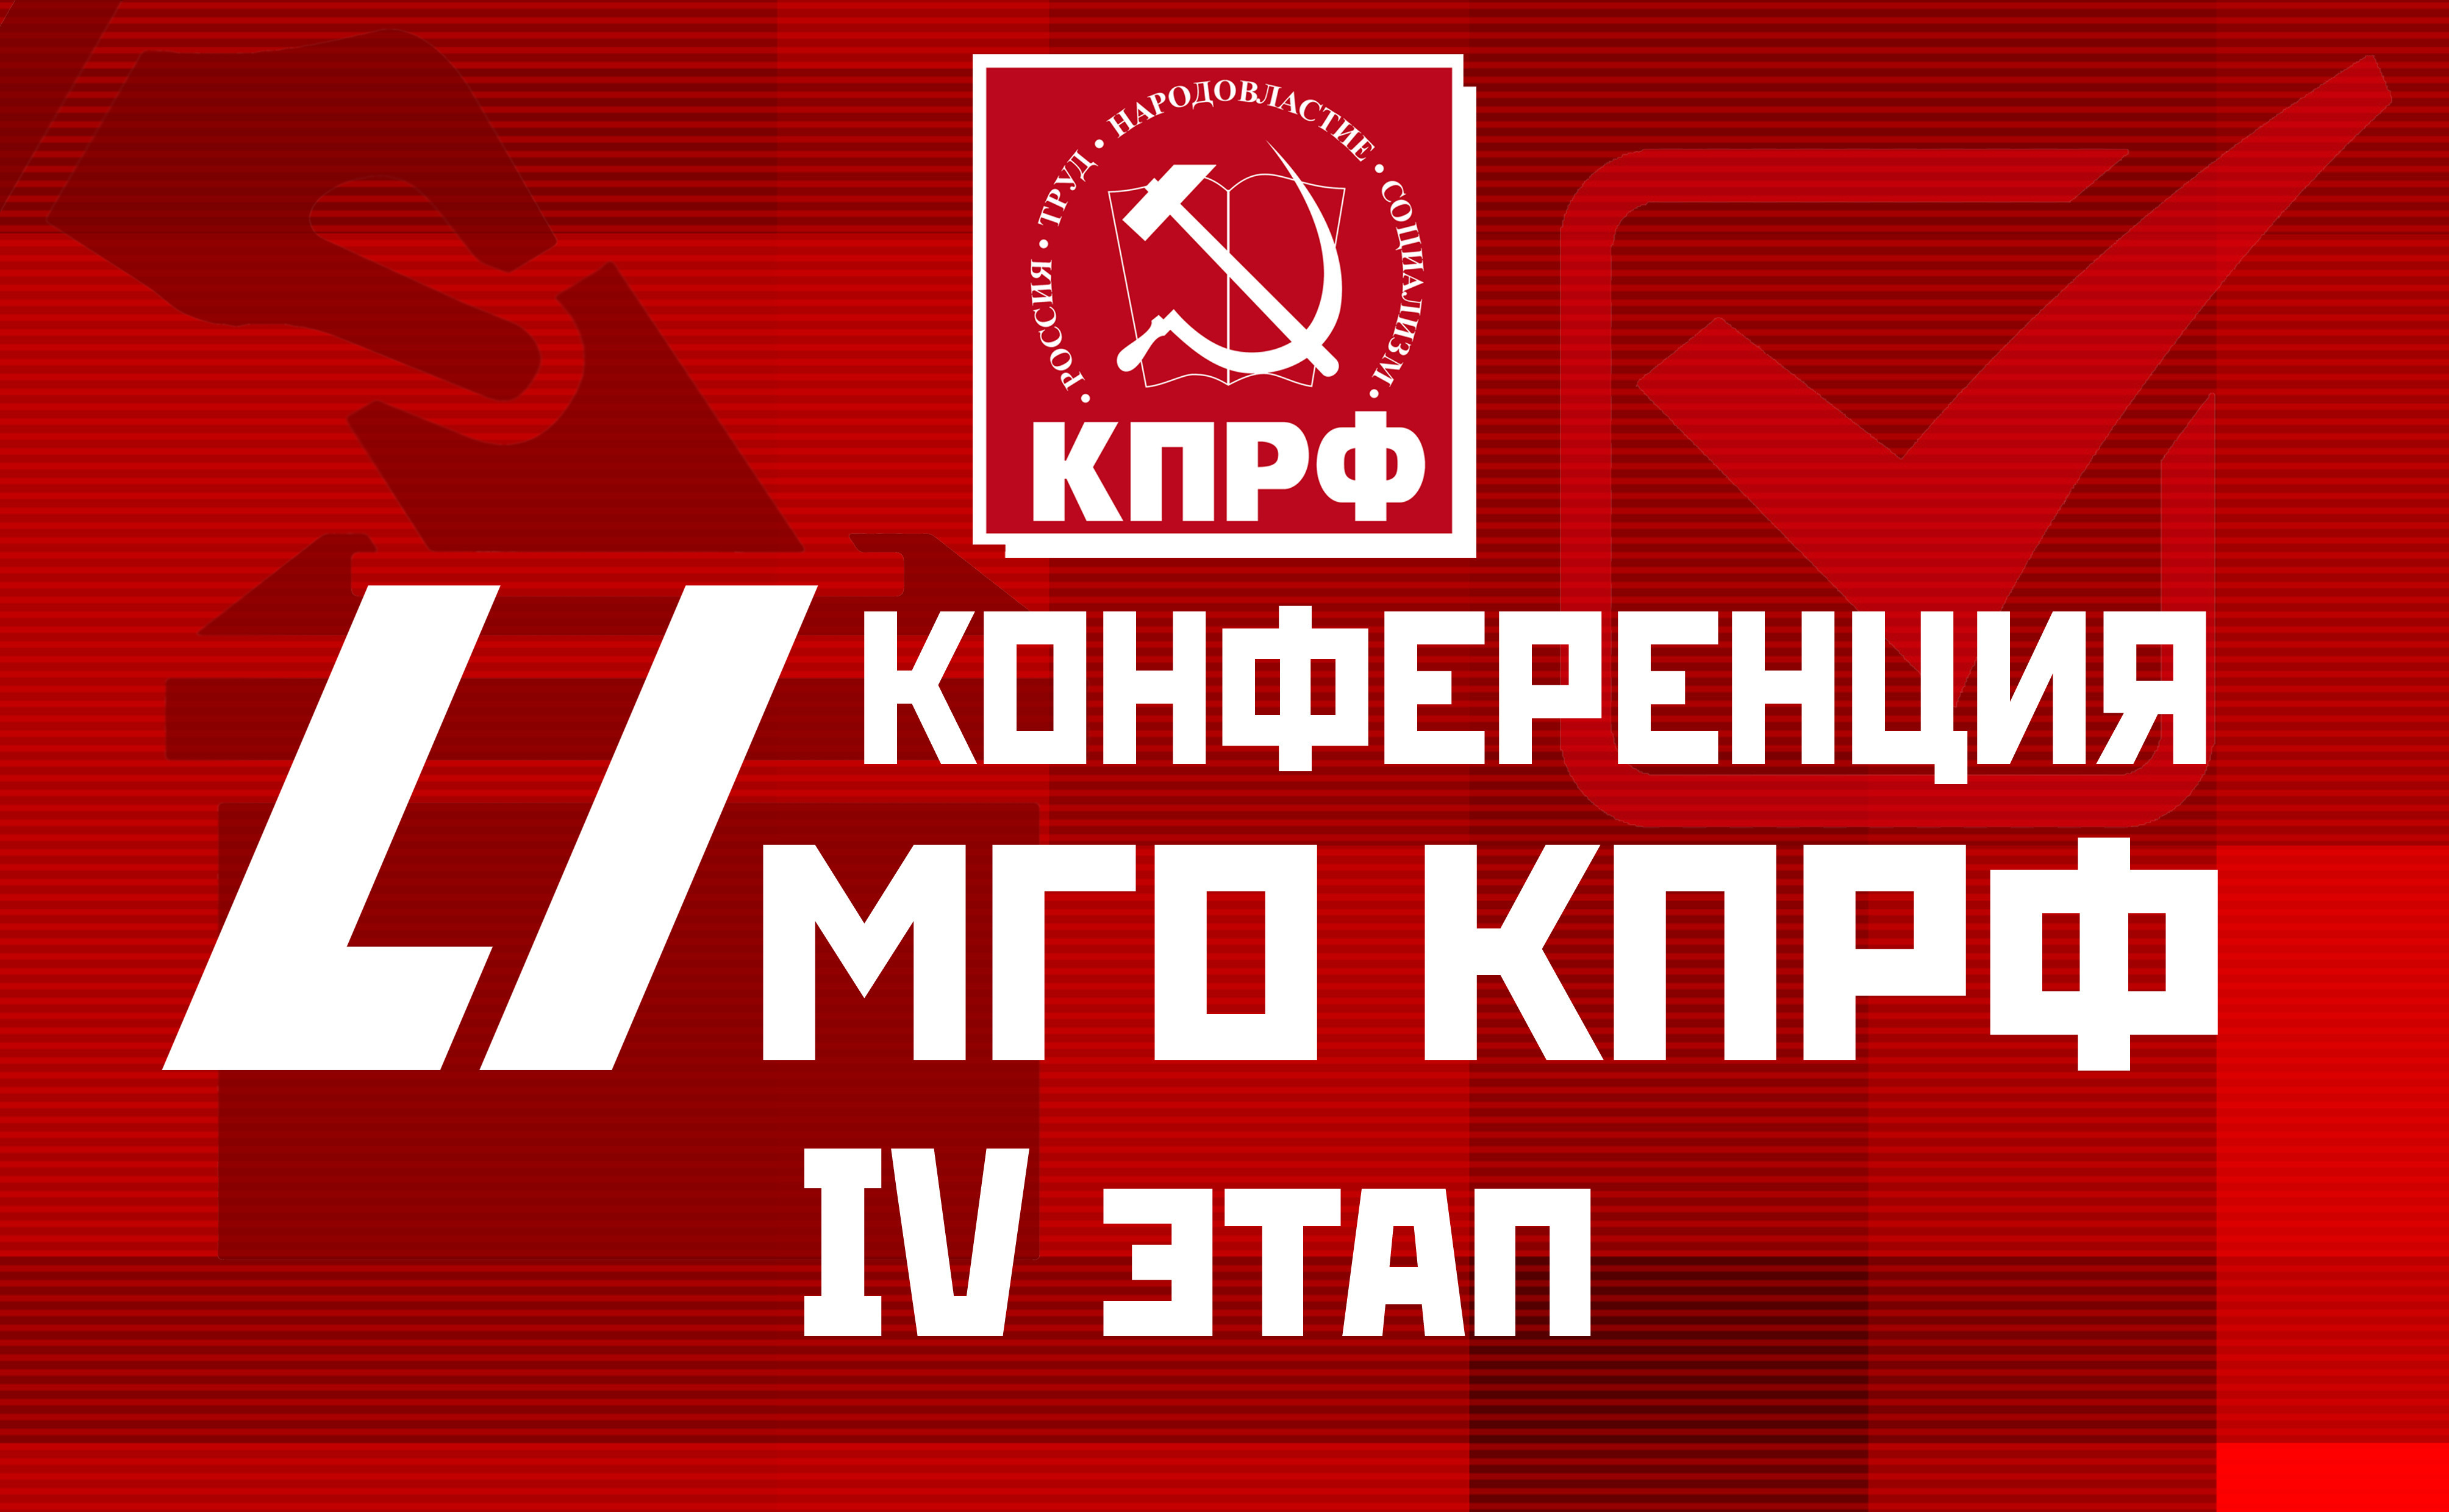 Список кандидатов от КПРФ на муниципальные выборы в Щукино